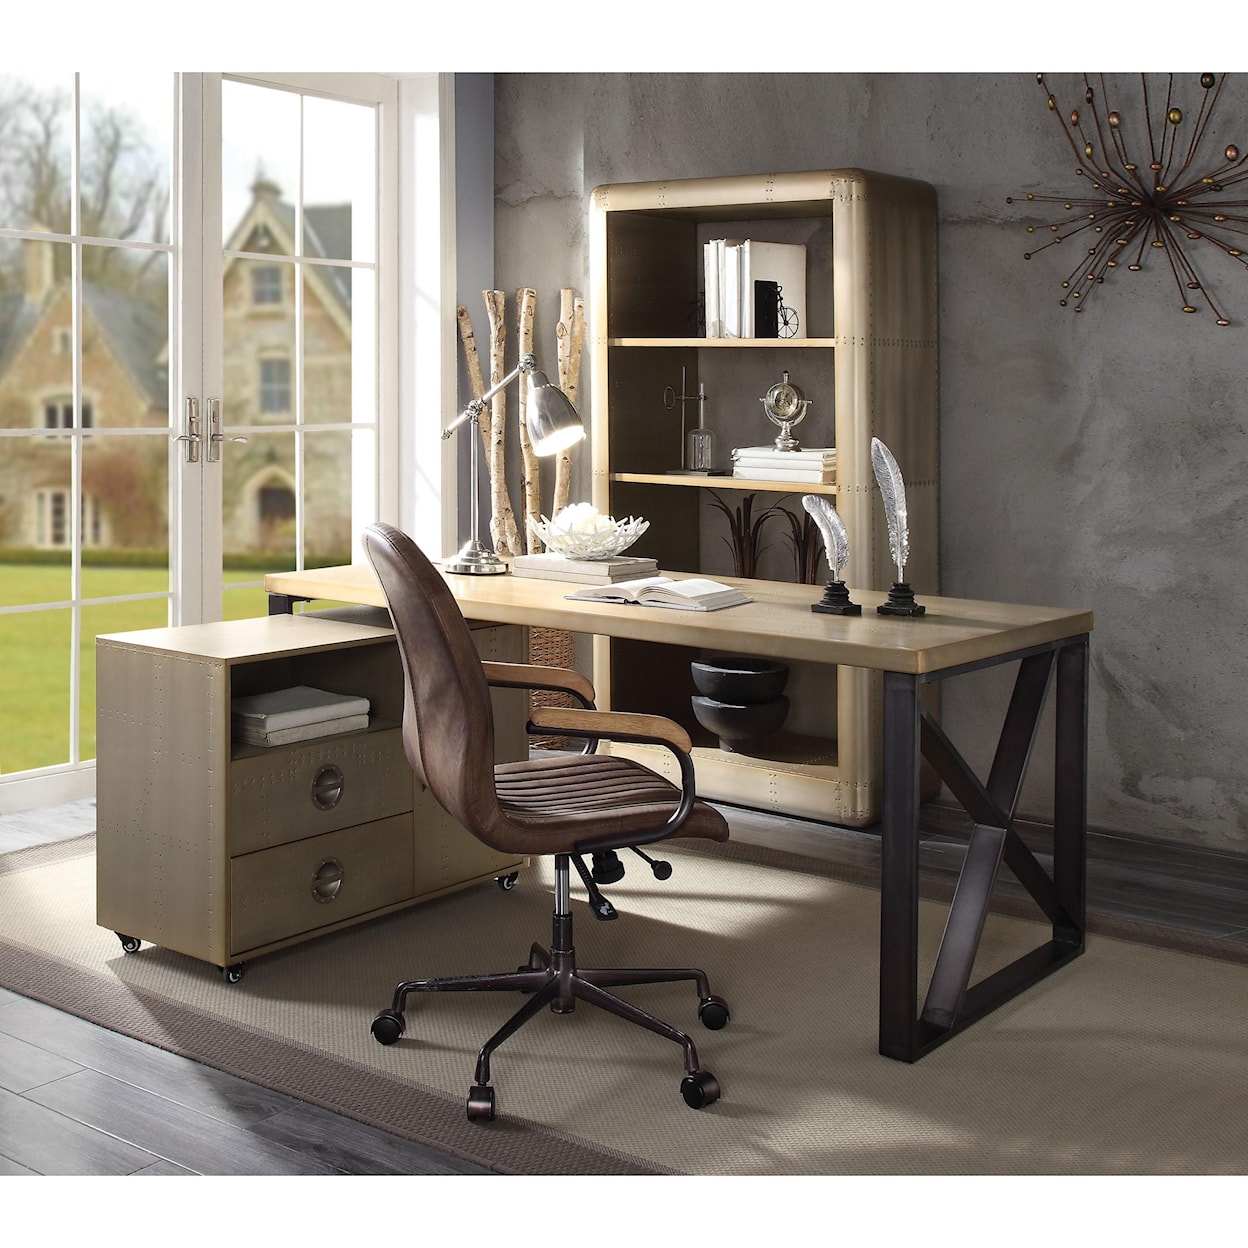 Acme Furniture Jennavieve Desk